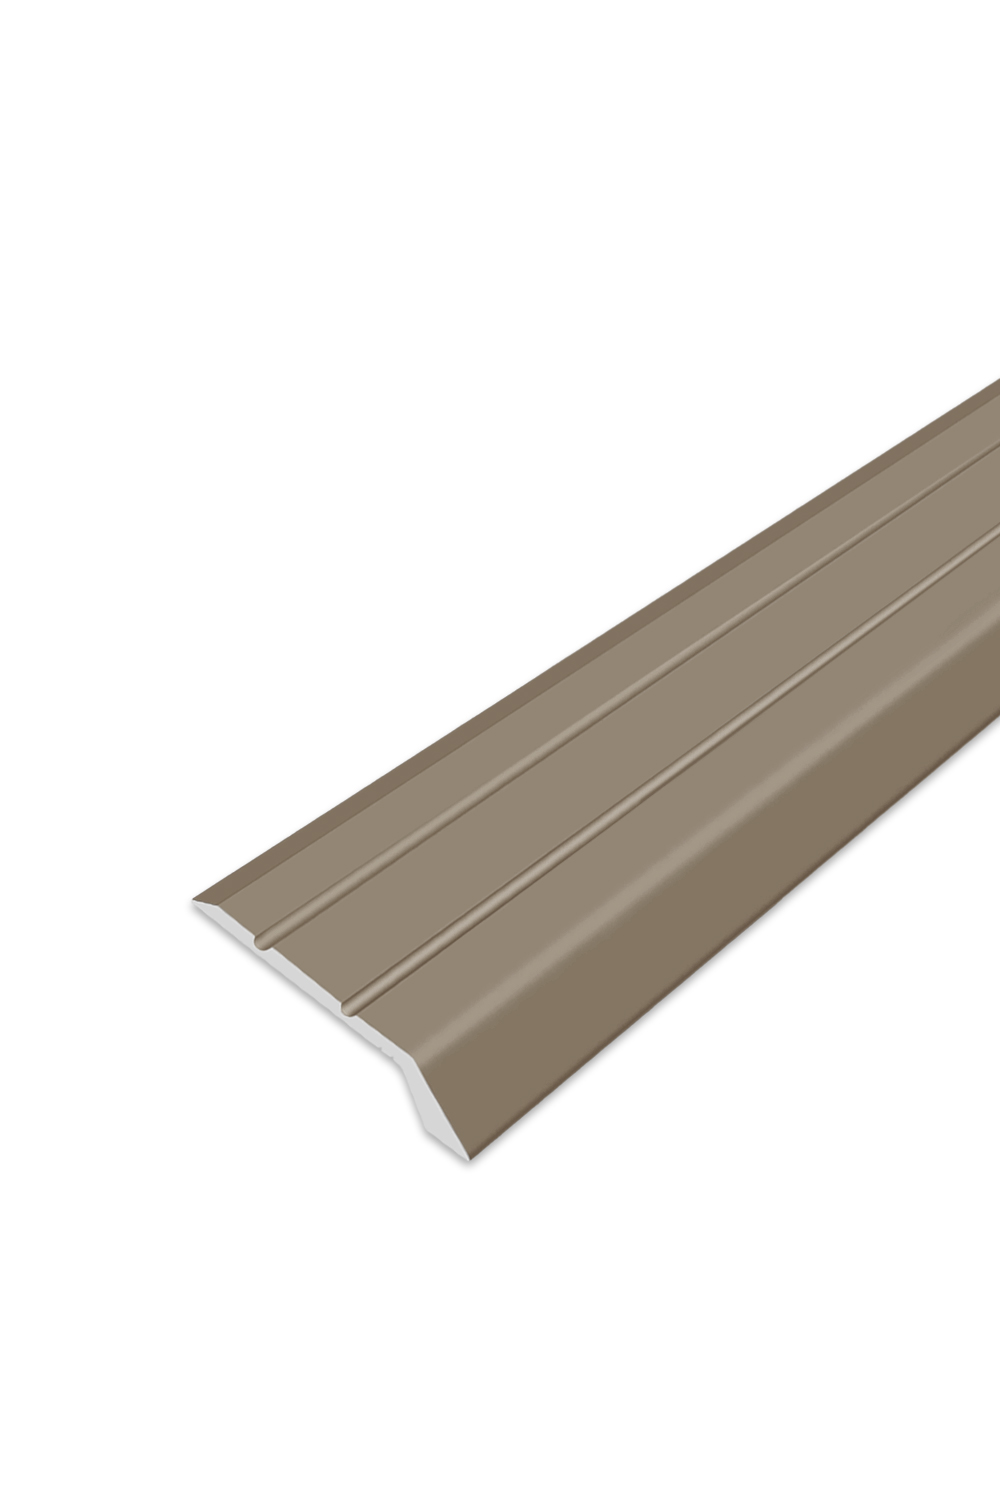 Ukončovací profil samolepící - Bronzový 32x6 mm